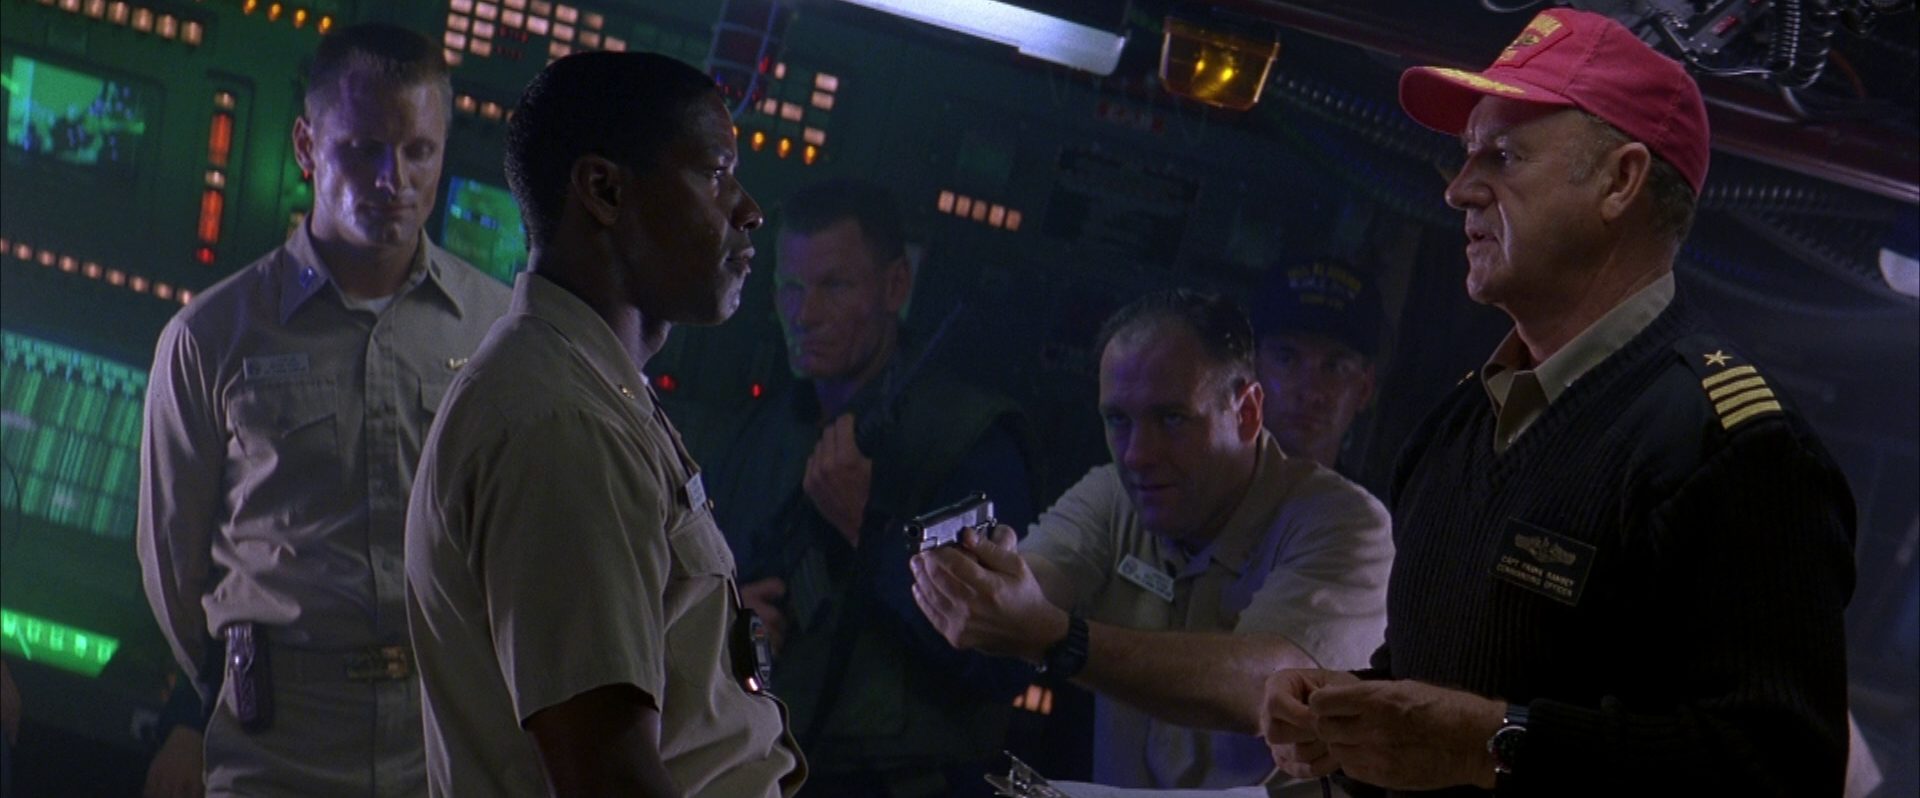 Konfrontation von Denzel Washington als Erstem Offizier und Gene Hackman als Kommandant; ein Besatzungsmitglied richtet die Waffe auf den Ersten Offizier, im Hintergrund steht Viggo Mortensen als Offizier mit geschlossenen Augen.